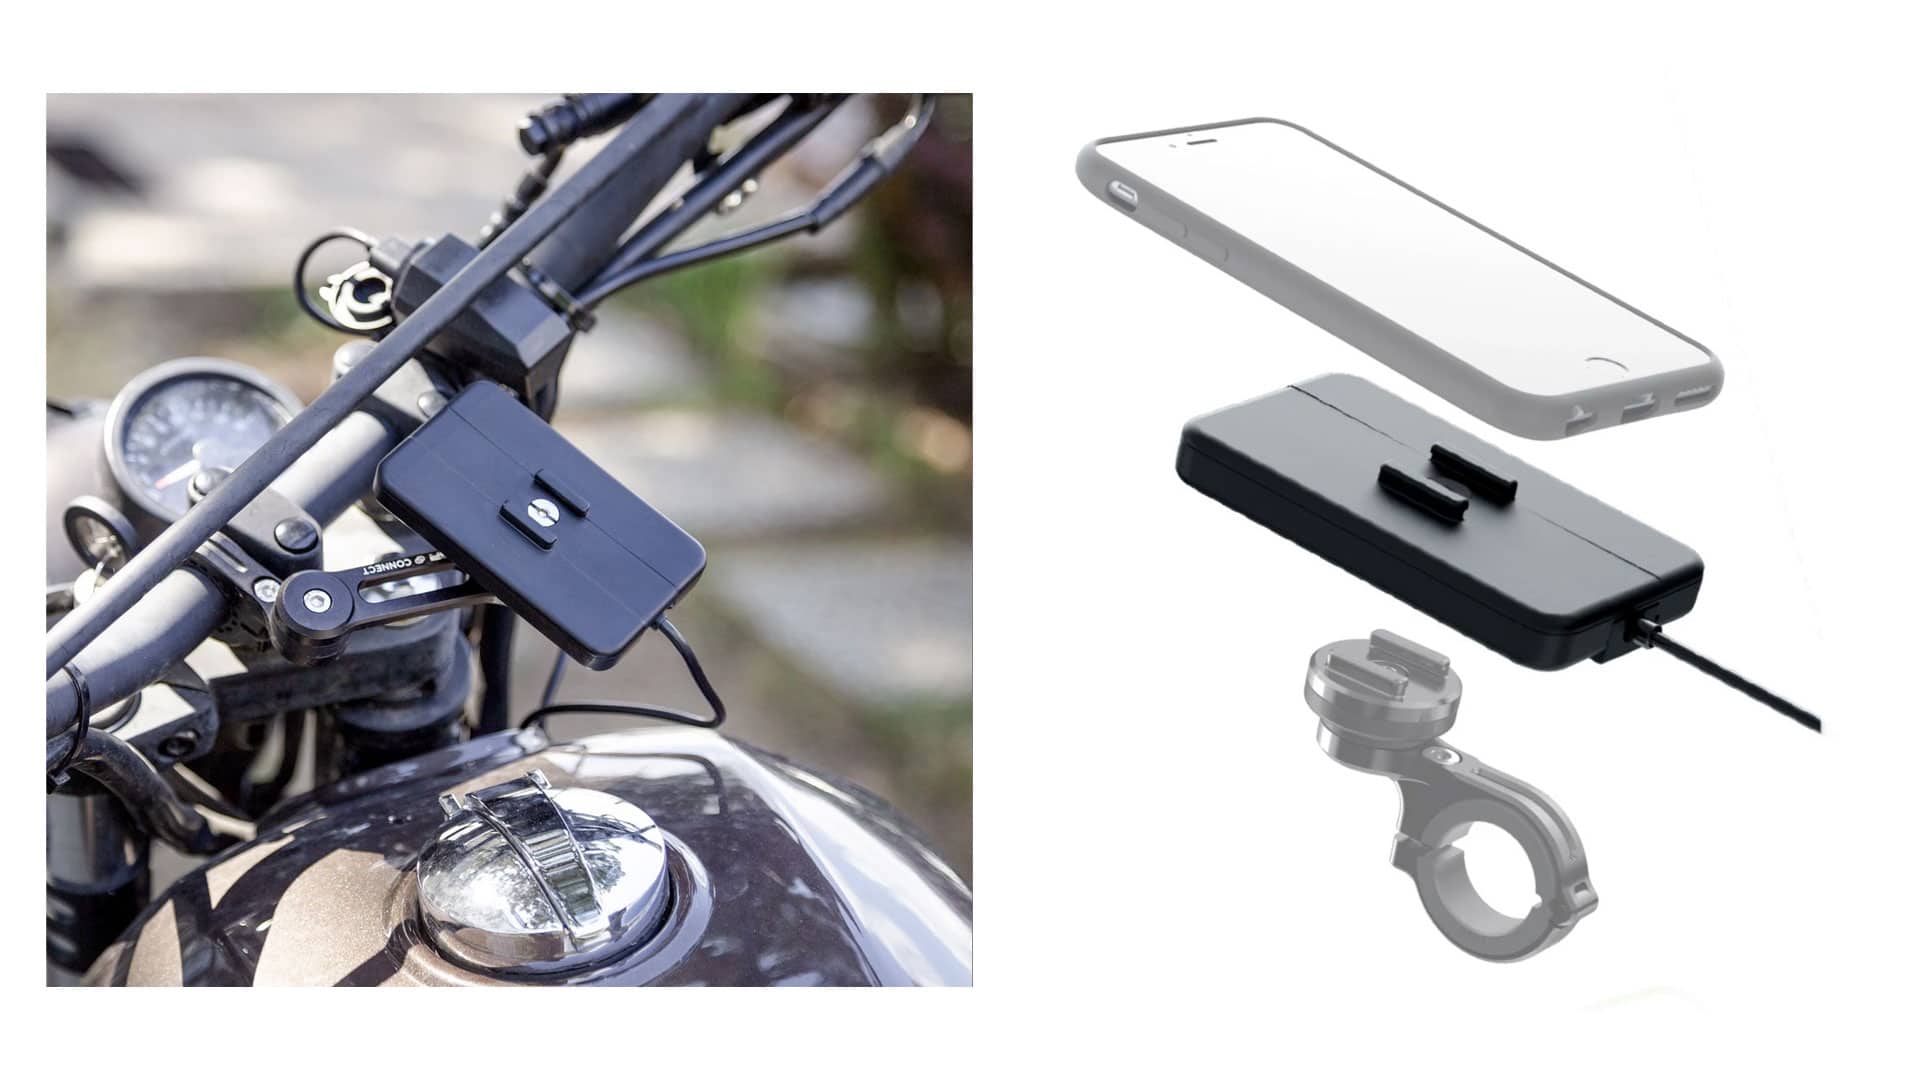 Pack complet support de téléphone SP-CONNECT moto-scooter - fixation sur  rétroviseur - iPhone 8 Plus